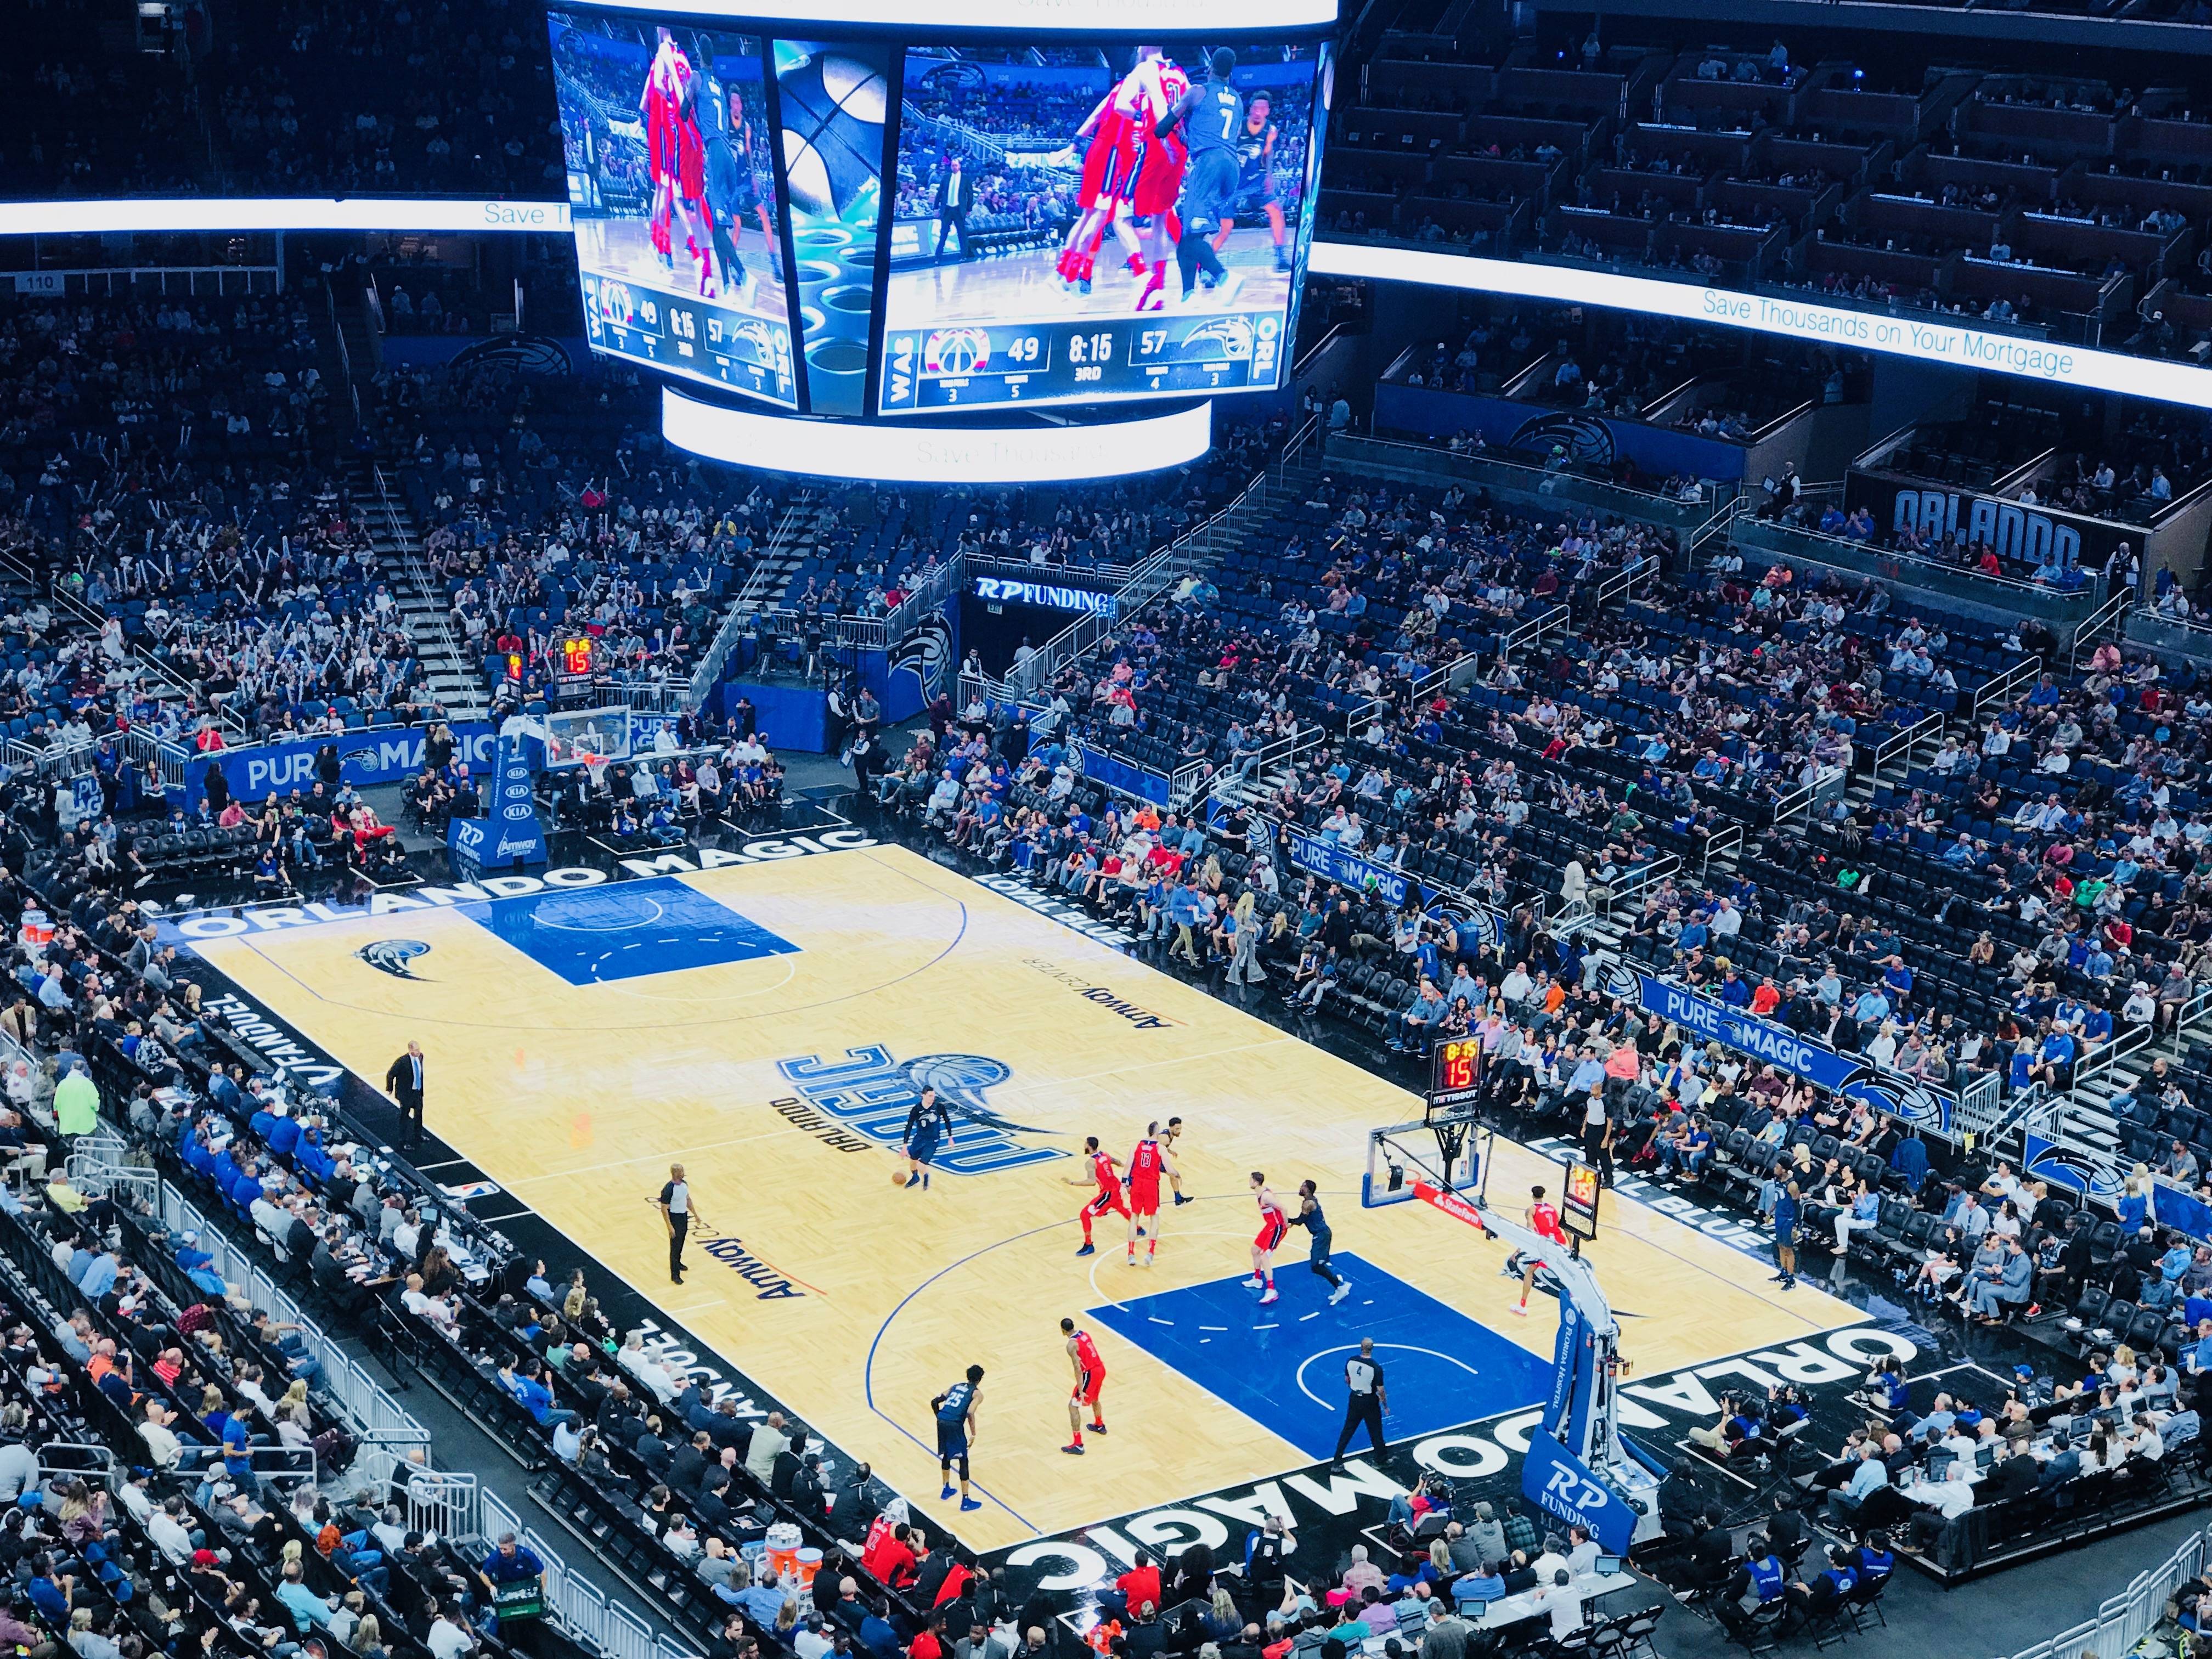 Orlando Magic: como é assistir a um jogo de basquete em Orlando